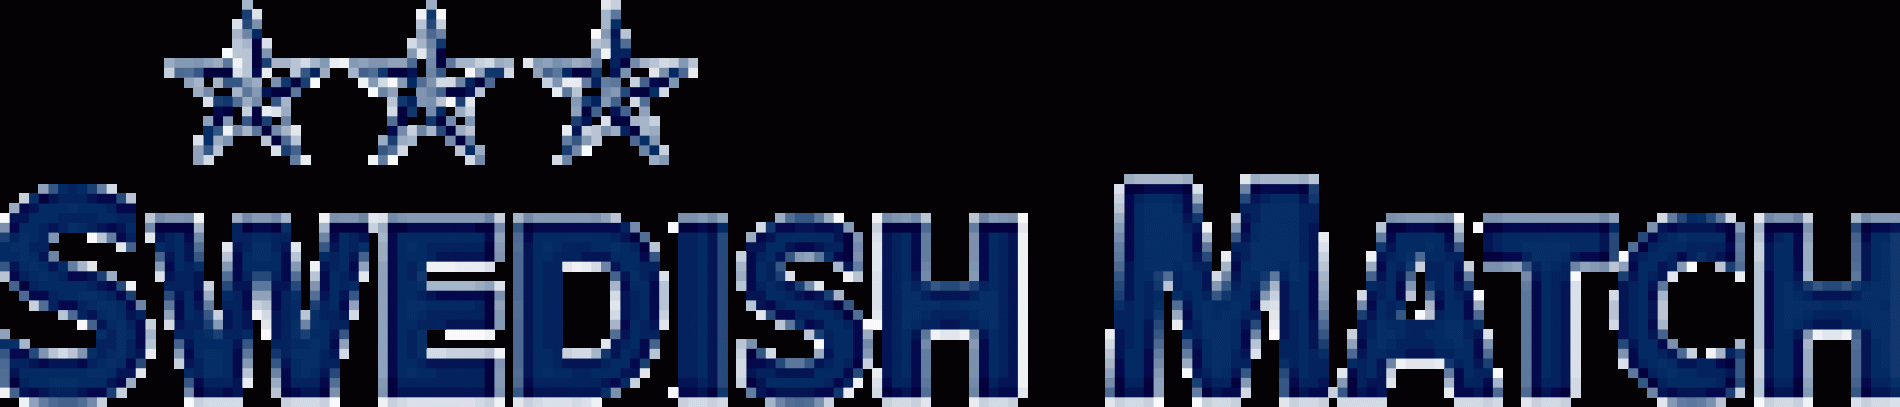 SnusCIA Snus Update – New Snus Coming!